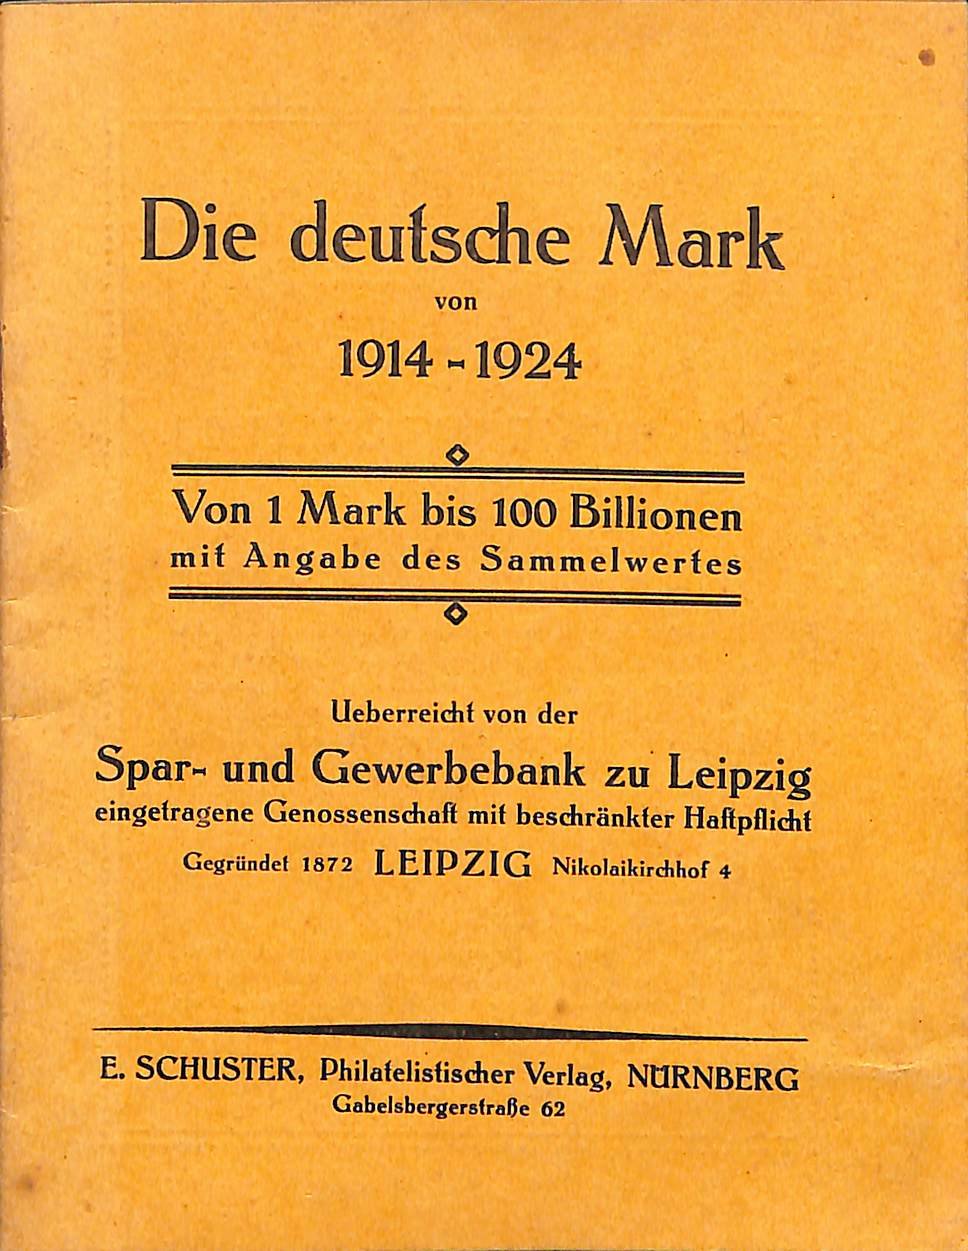 Die Deutsche Mark von 1914-1924 von 1 Mark bis 100 Billionen (Heimatwelten Zwönitz CC BY-NC-SA)